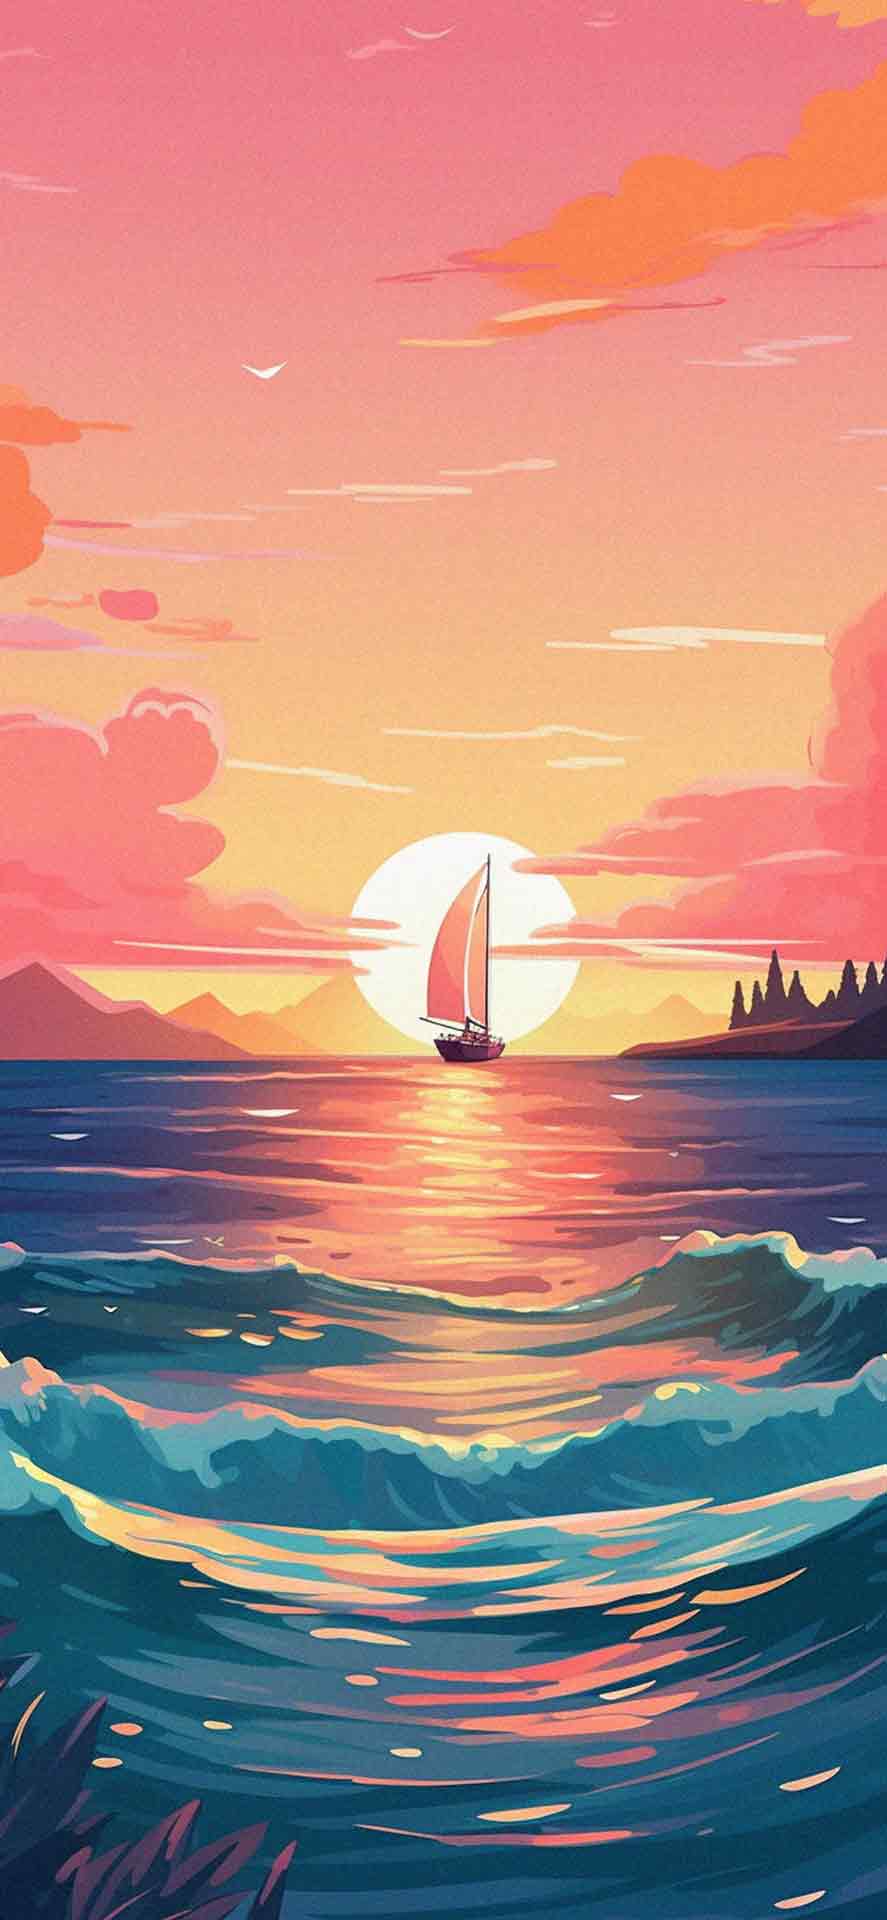 帆船在日落夏季壁纸